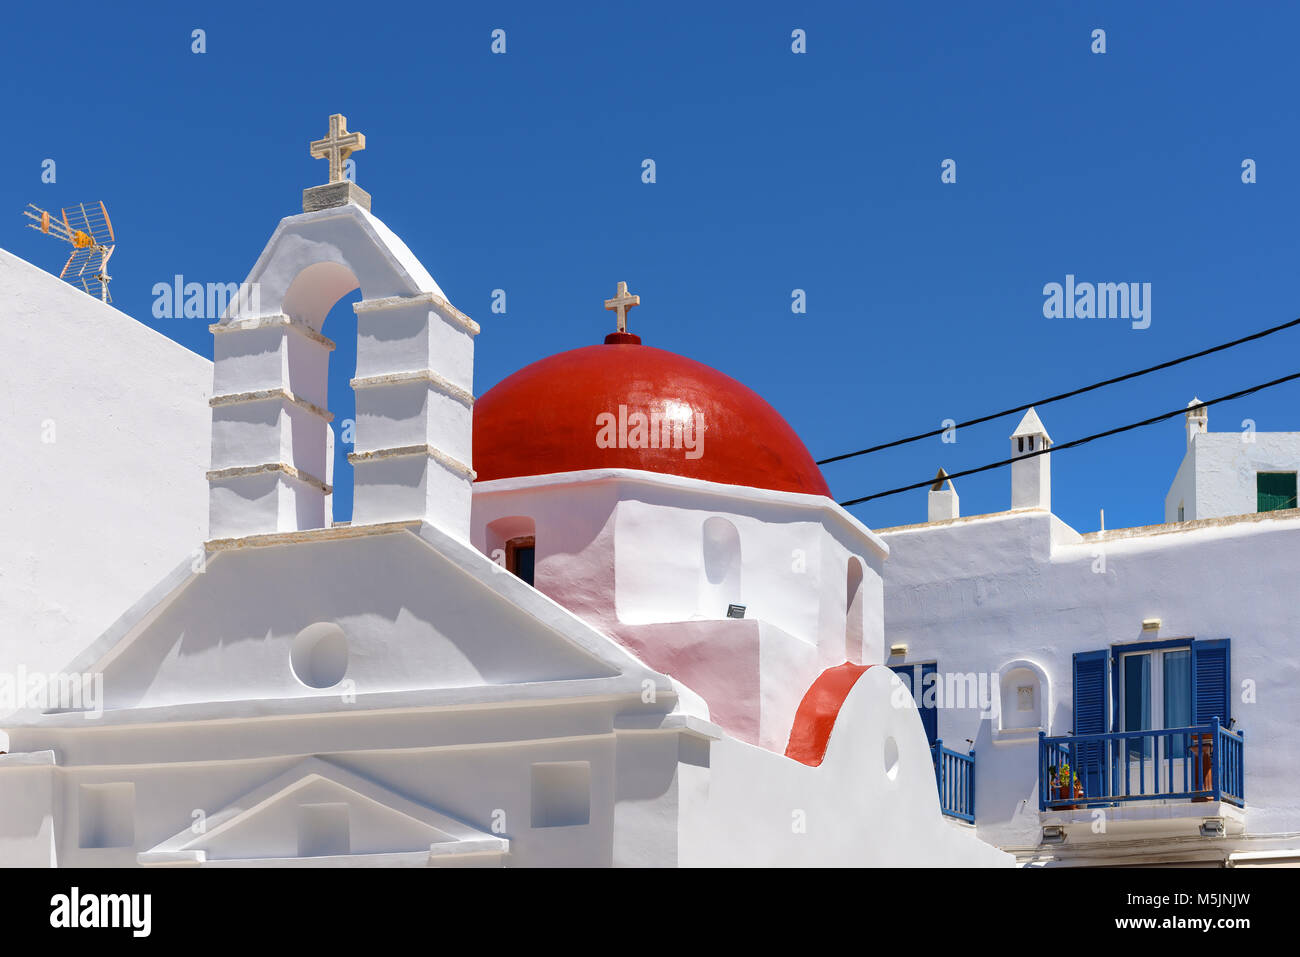 Bâtiment de l'église grecque typique avec dôme rouge dans la ville de Mykonos. Cyclades, Grèce Banque D'Images